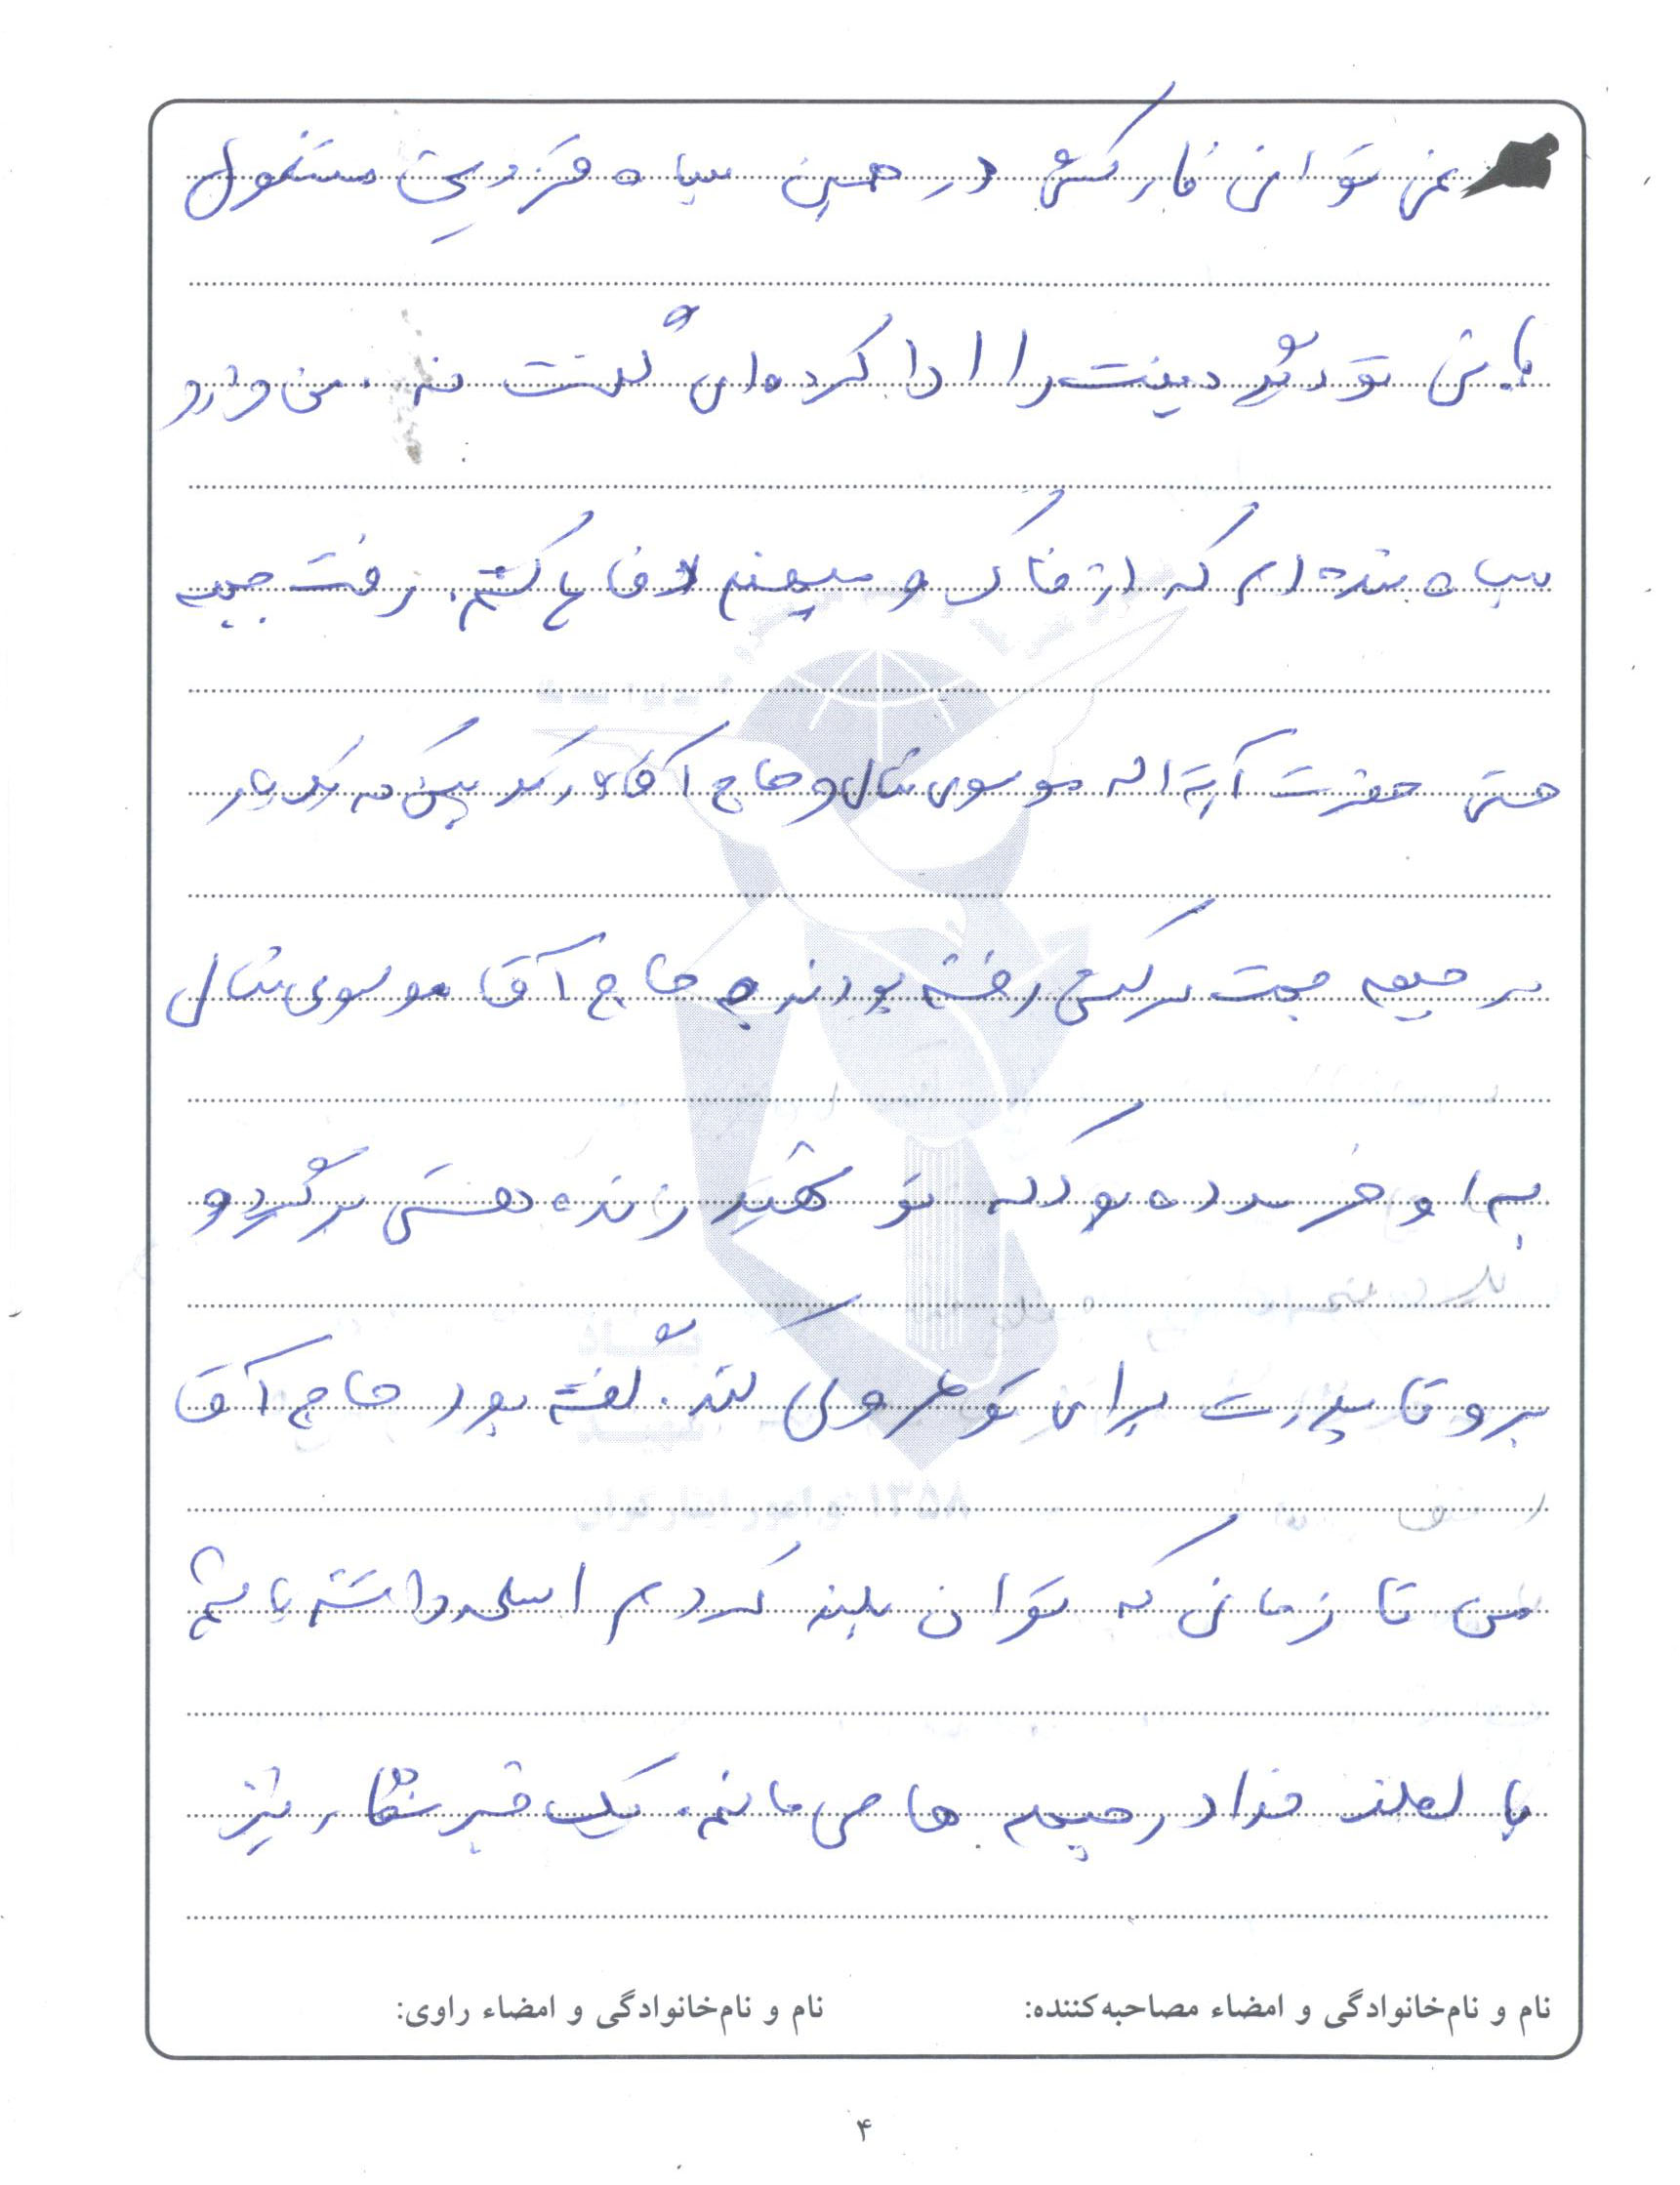 گزارش تصویری از مدارک و دست نوشته های شهید علی محمدرضایی 43